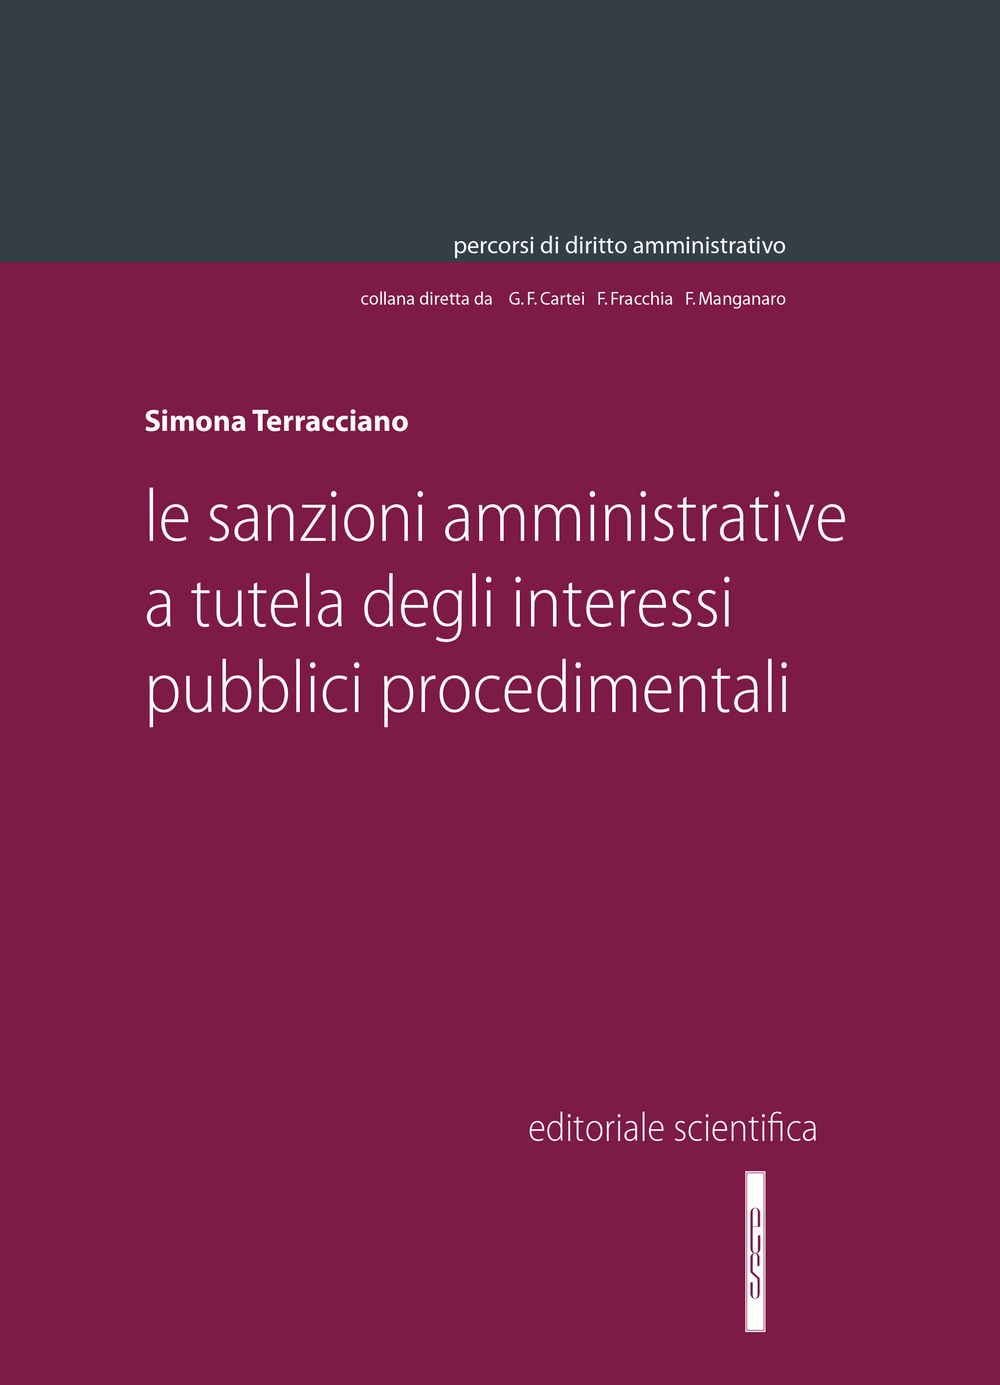 Le sanzioni amministrative a tutela degli interessi pubblici procedimentali